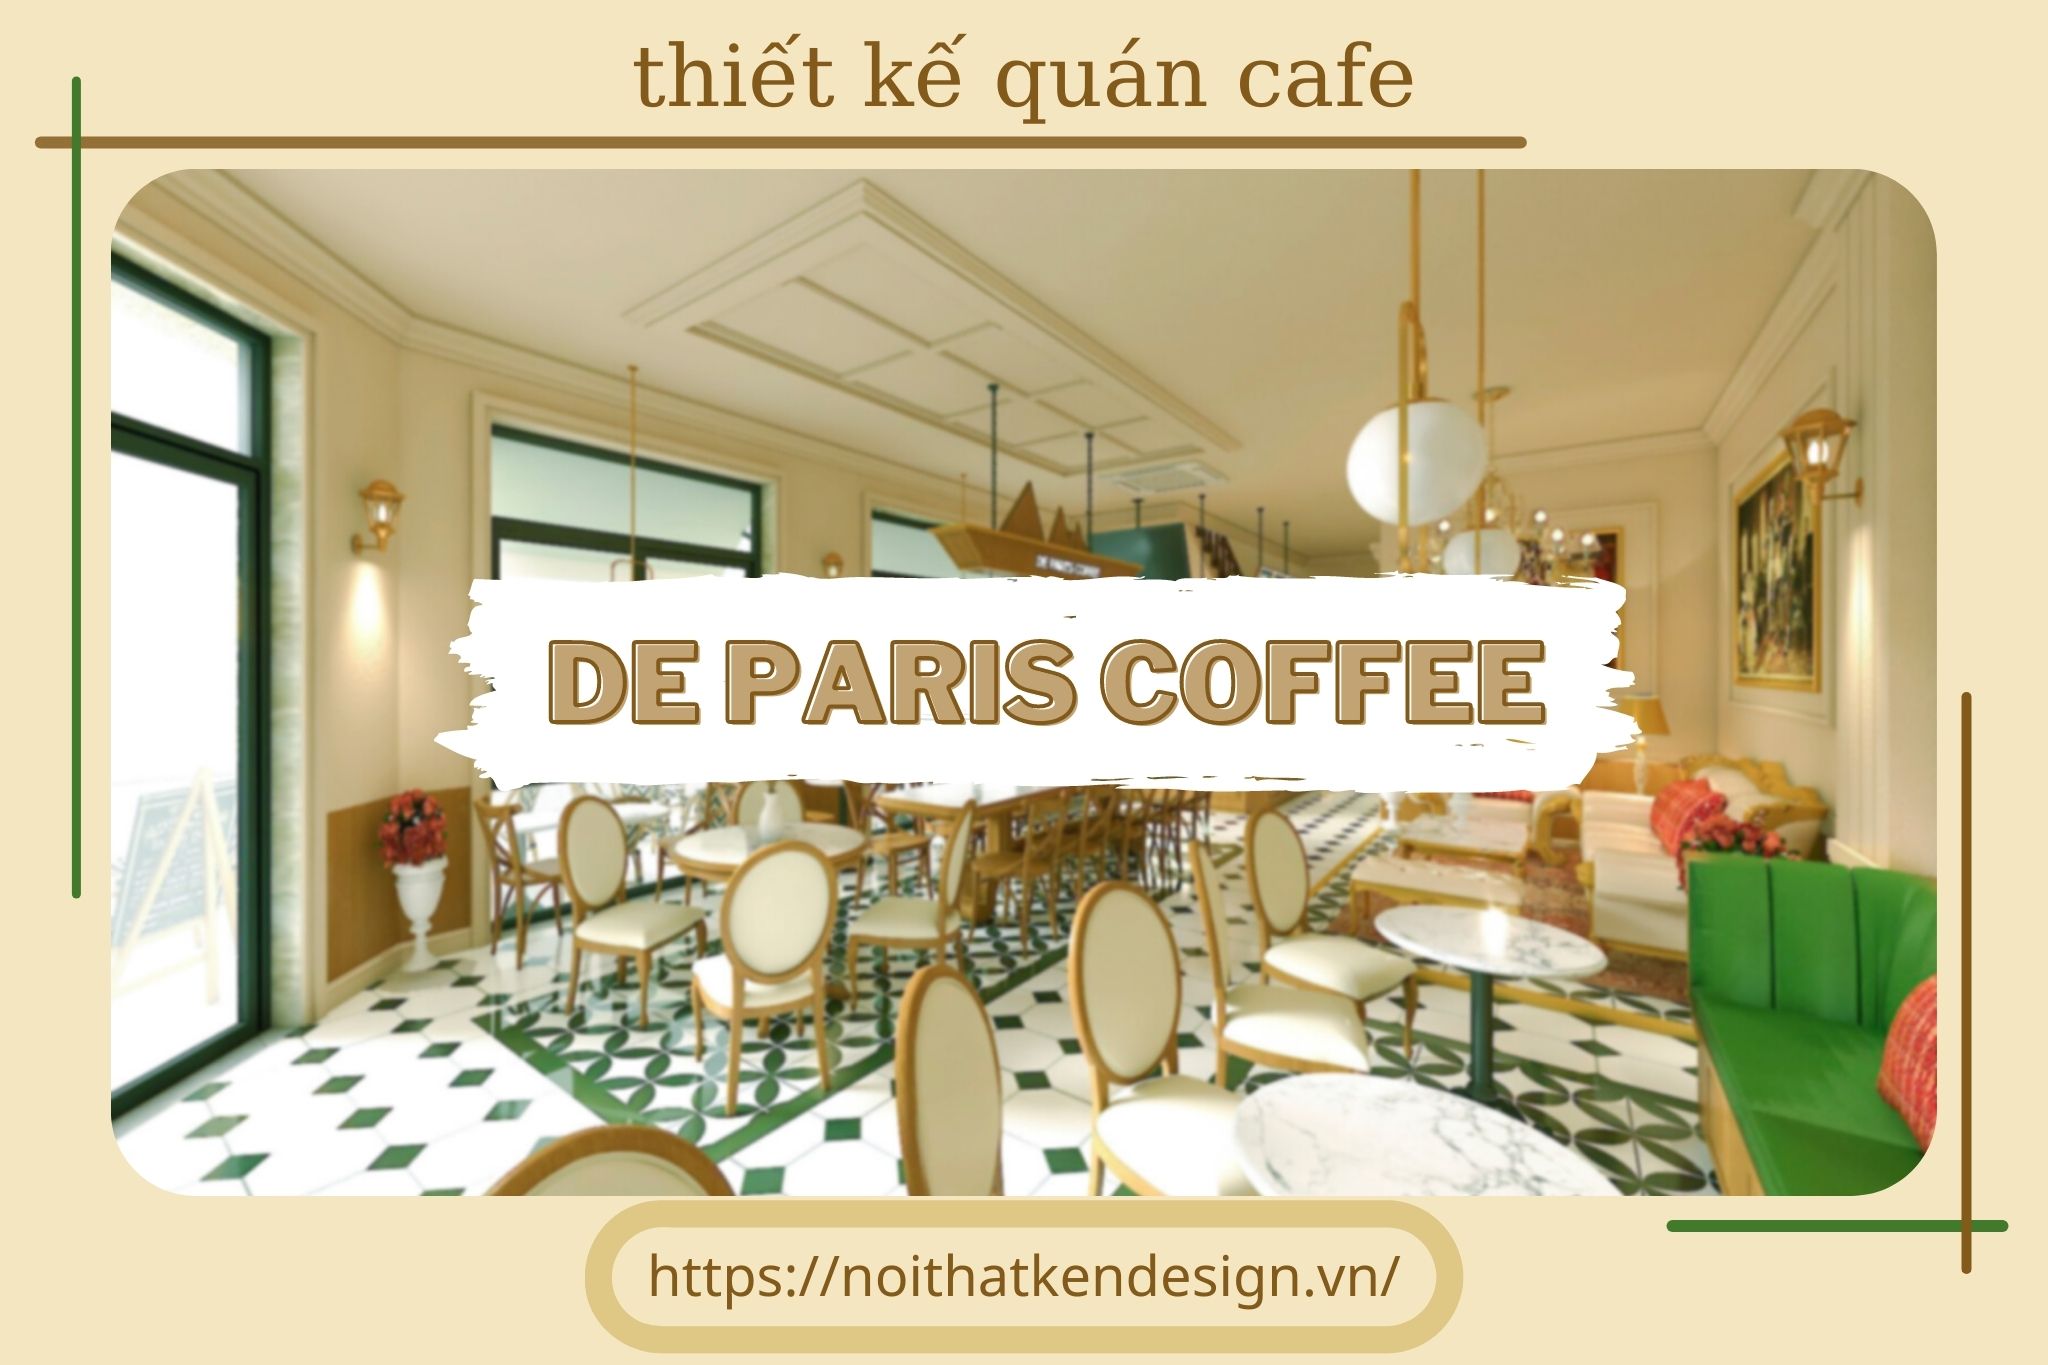 Thiết kế De Paris Coffee - một góc tời Âu thơ mộng giữa lòng thành phố